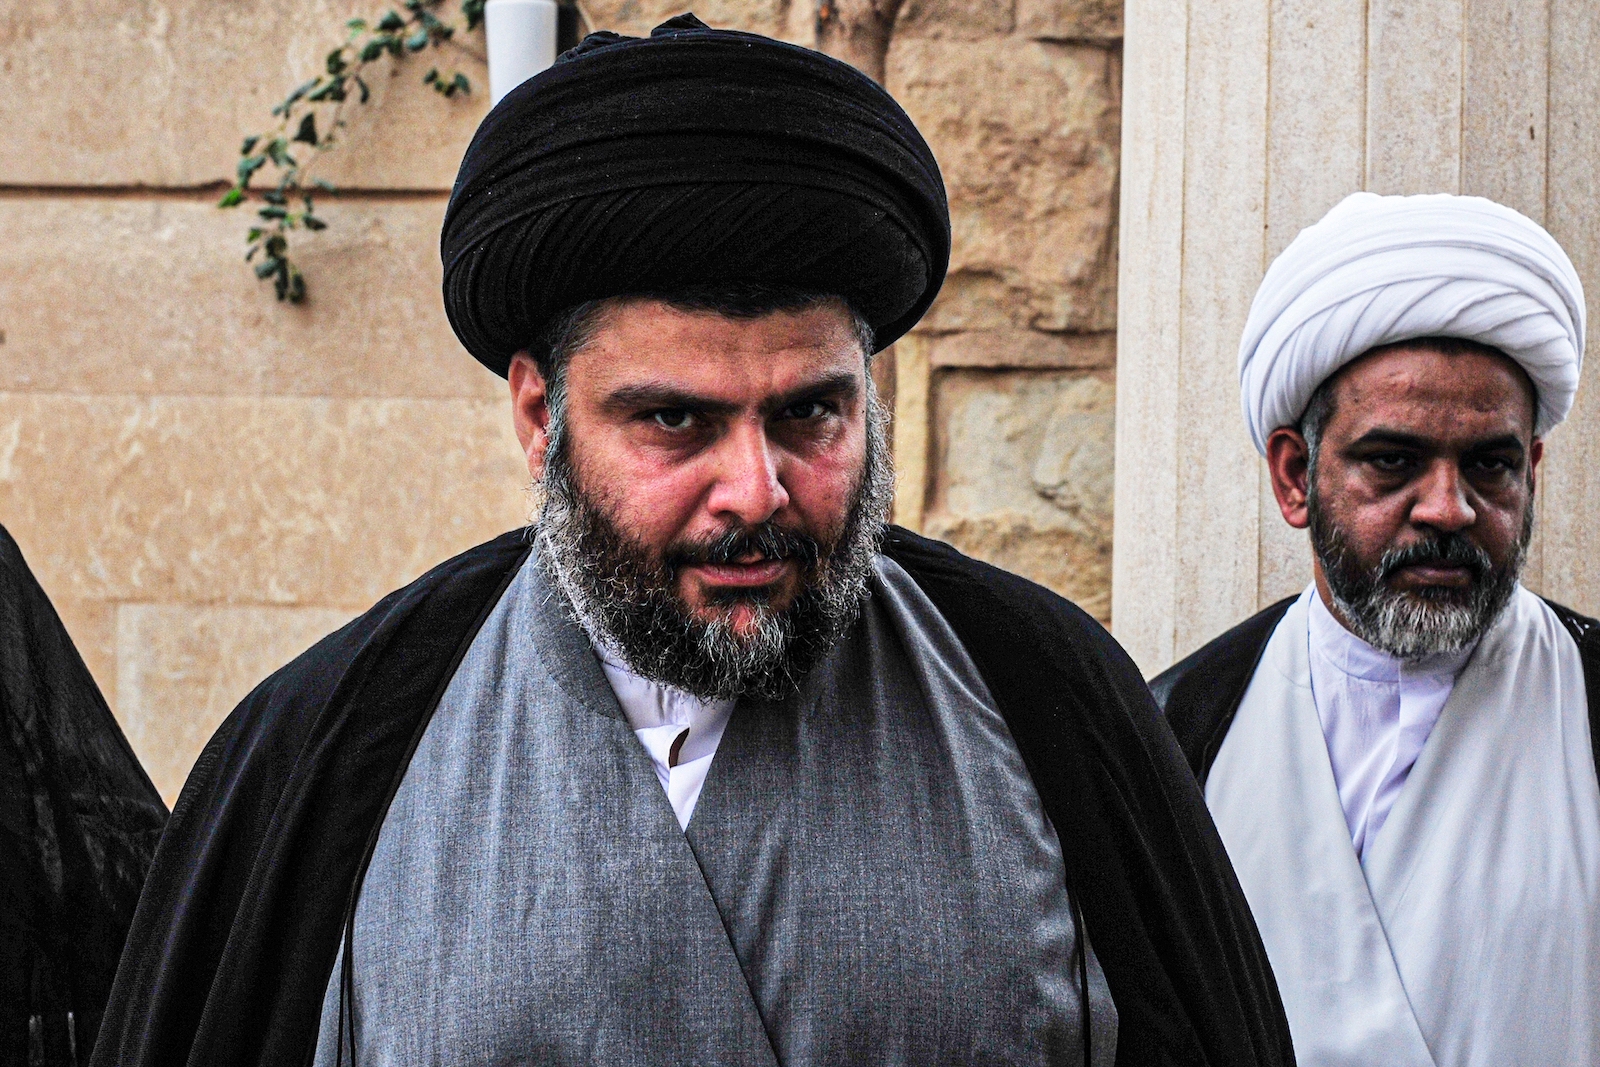 Shia cleric Muqtada al-Sadr